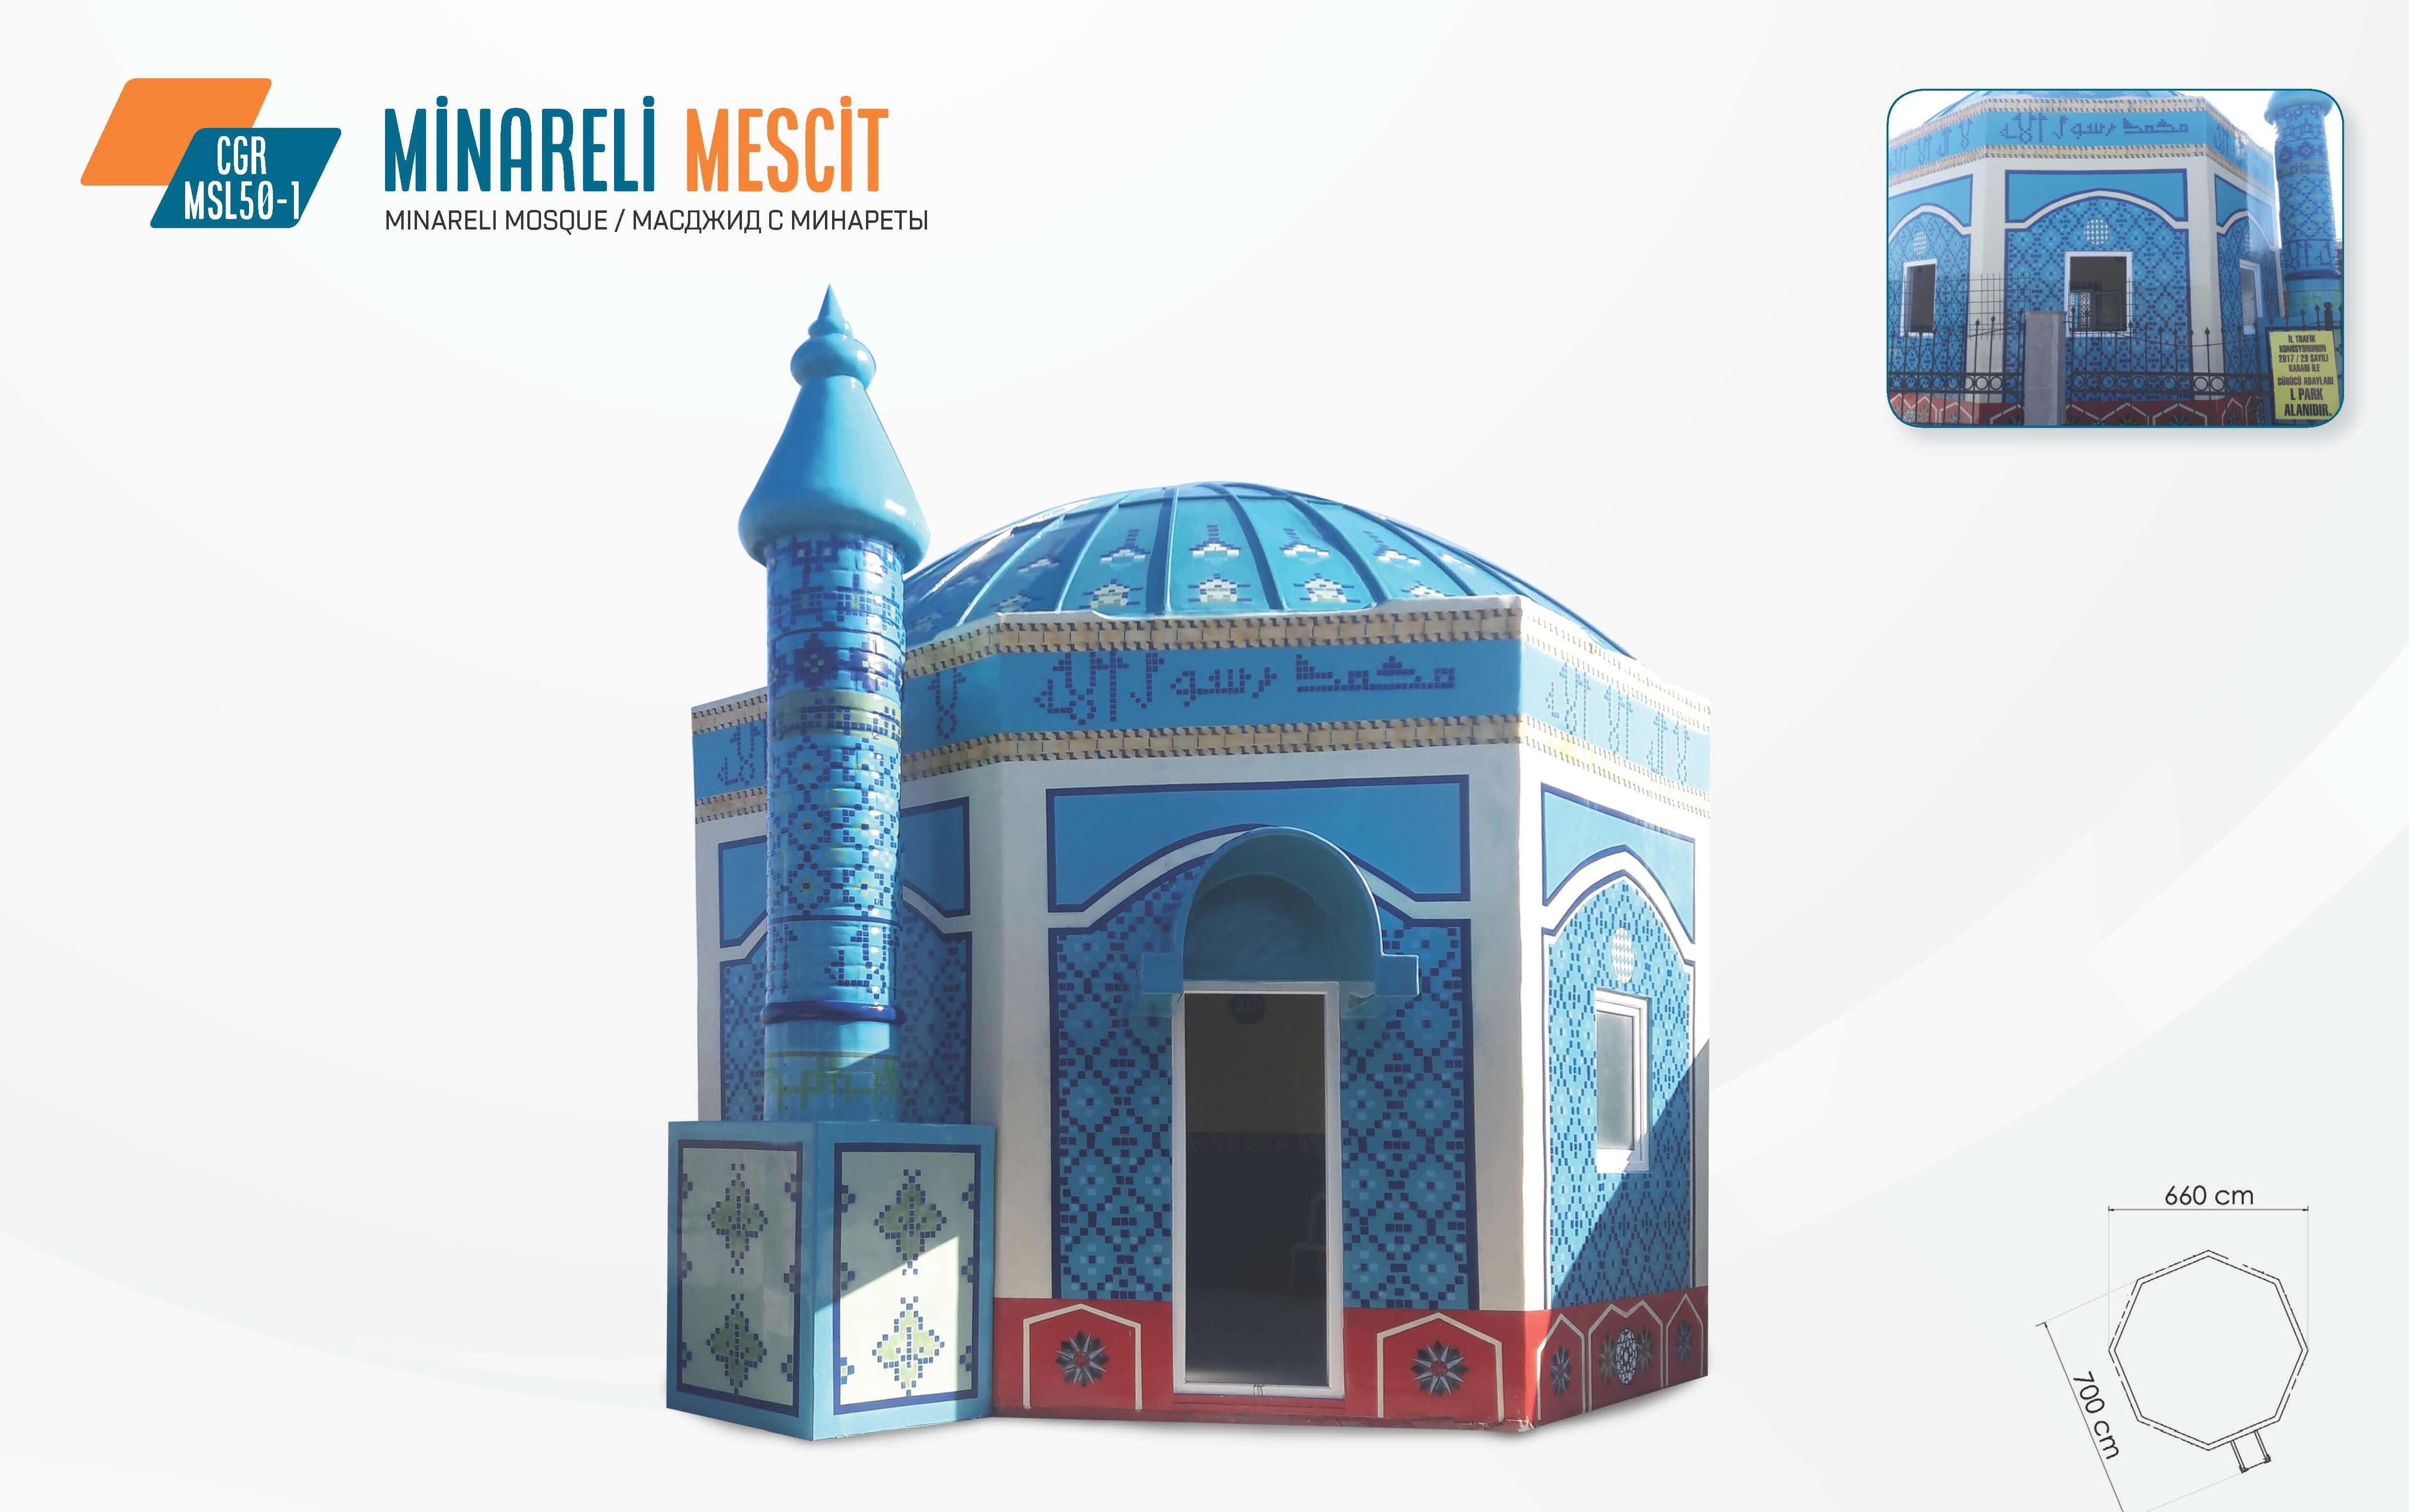 Minareli Mescit – CGR MSL50-1